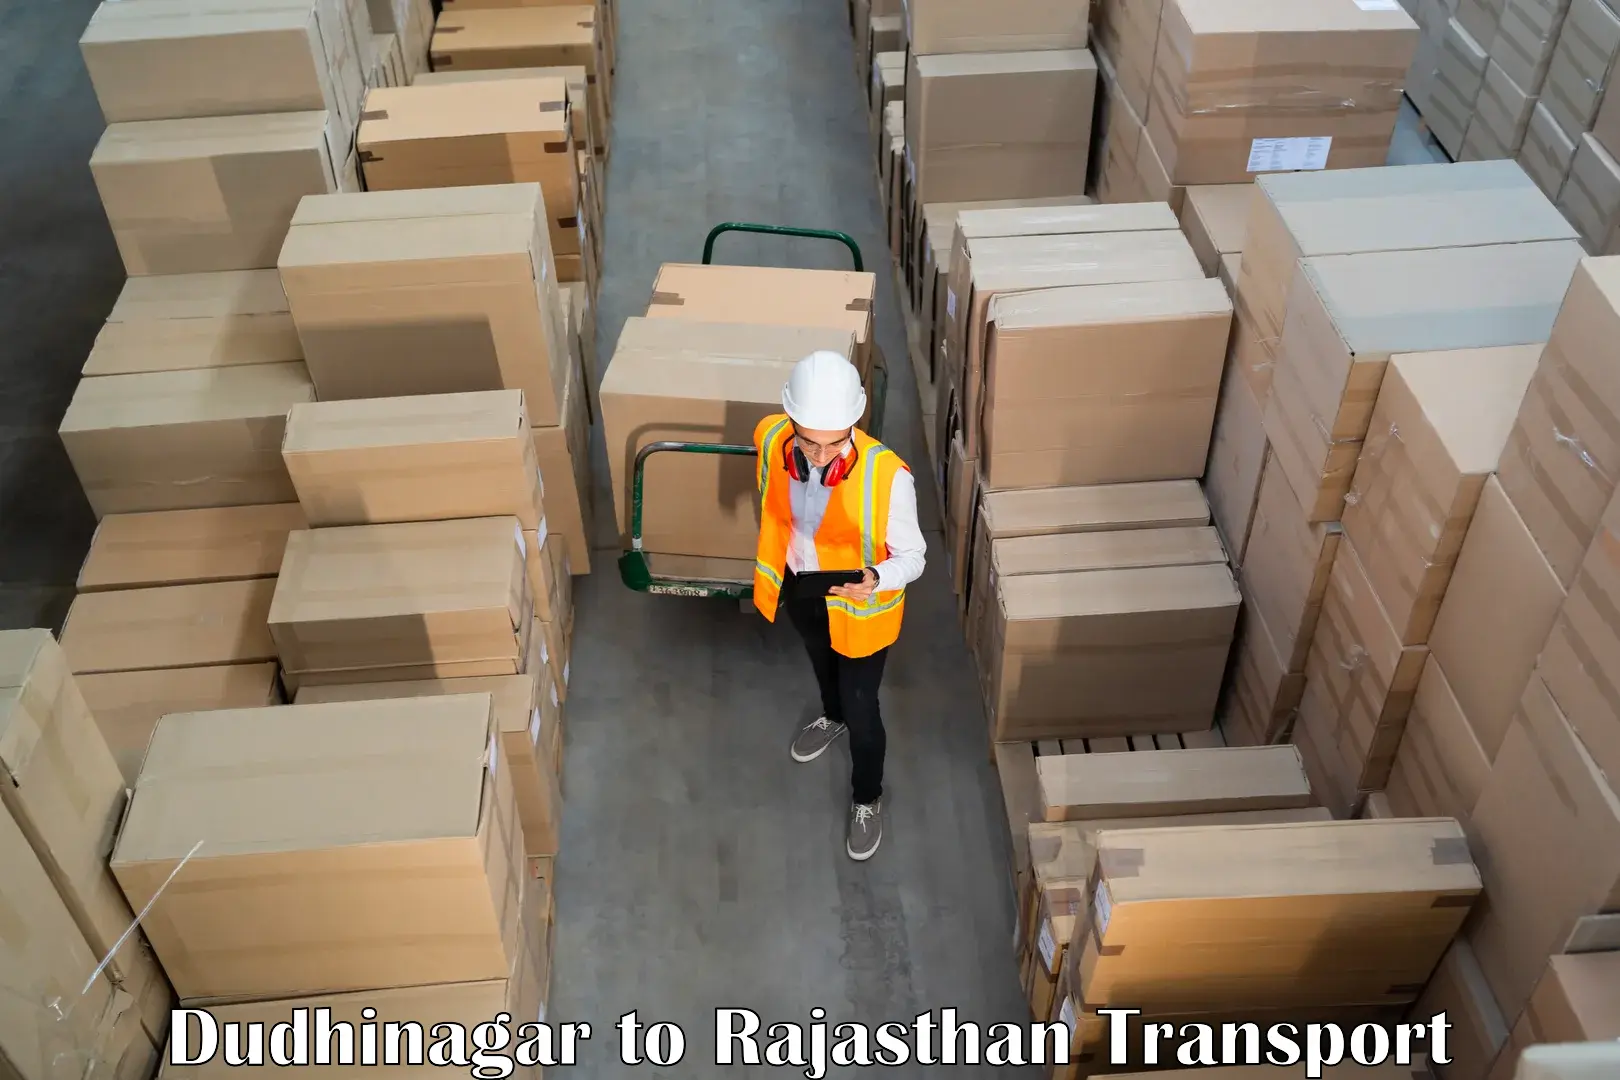 Road transport online services Dudhinagar to Sri Vijaynagar